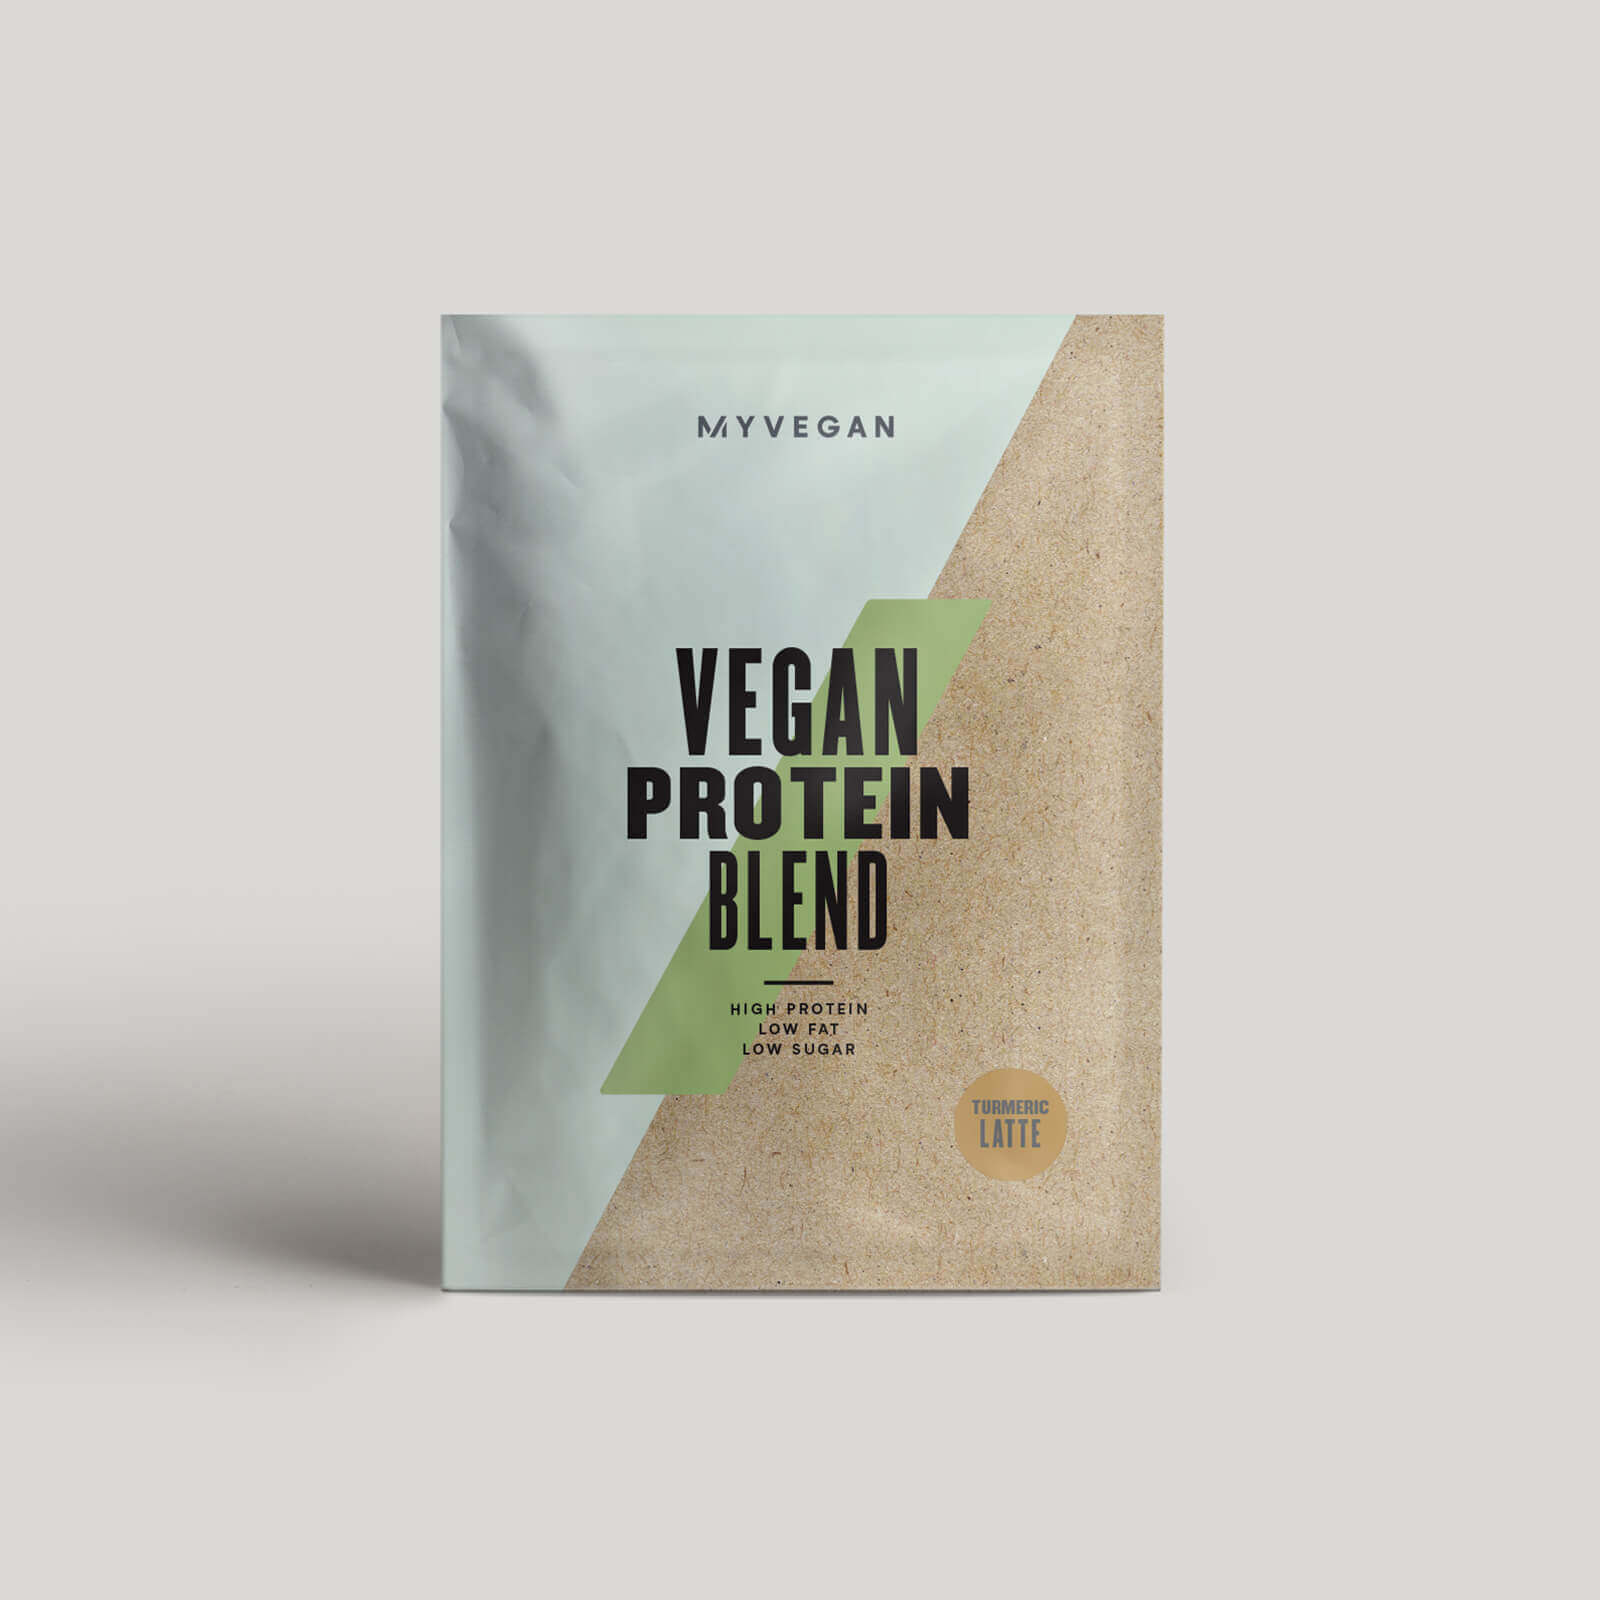 Myvegan Vegan Protein Blend (Sample) - Turmeric Latte